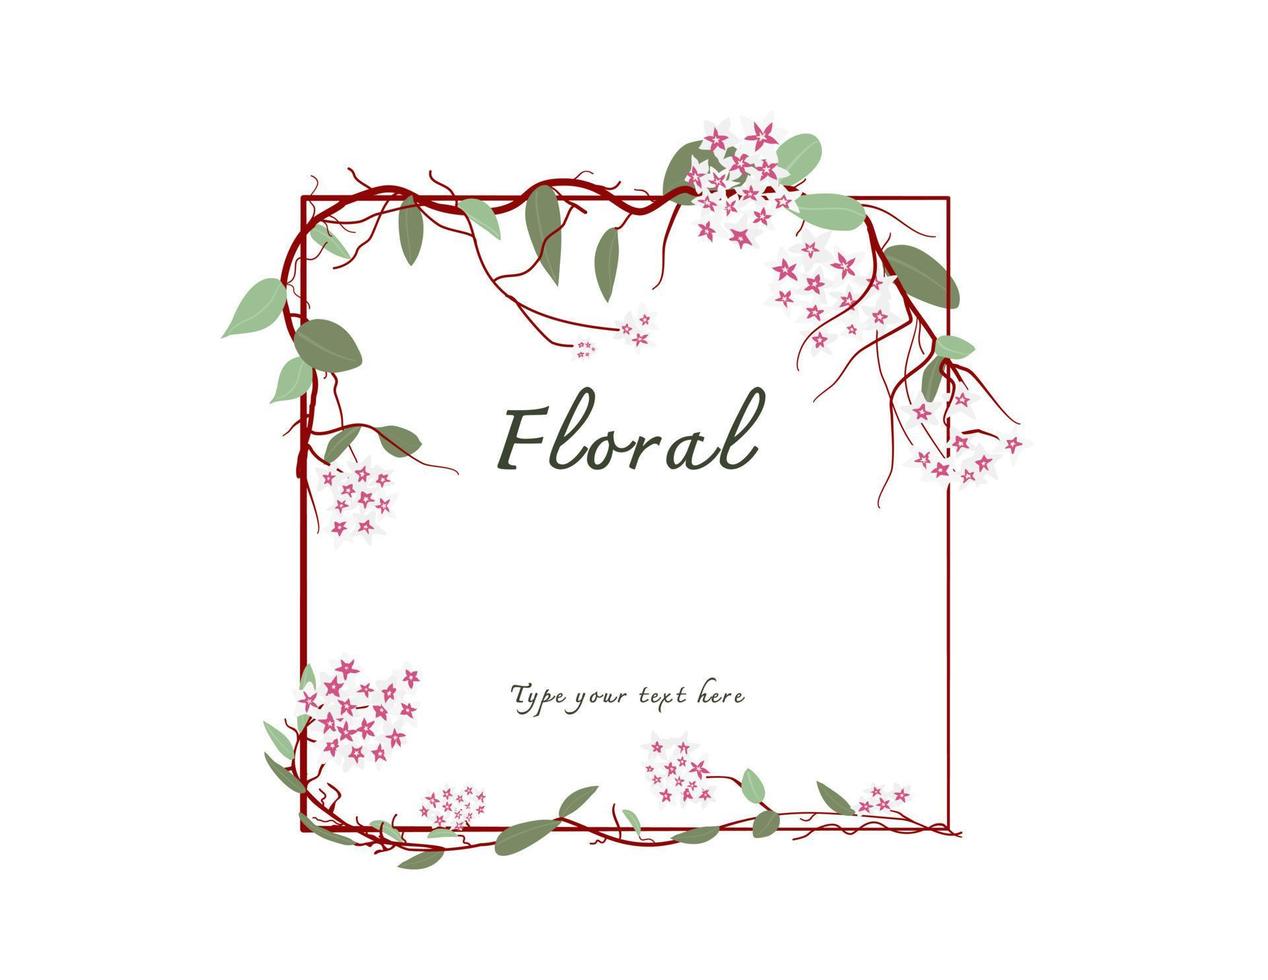 Ho ya flower frame banner template vector